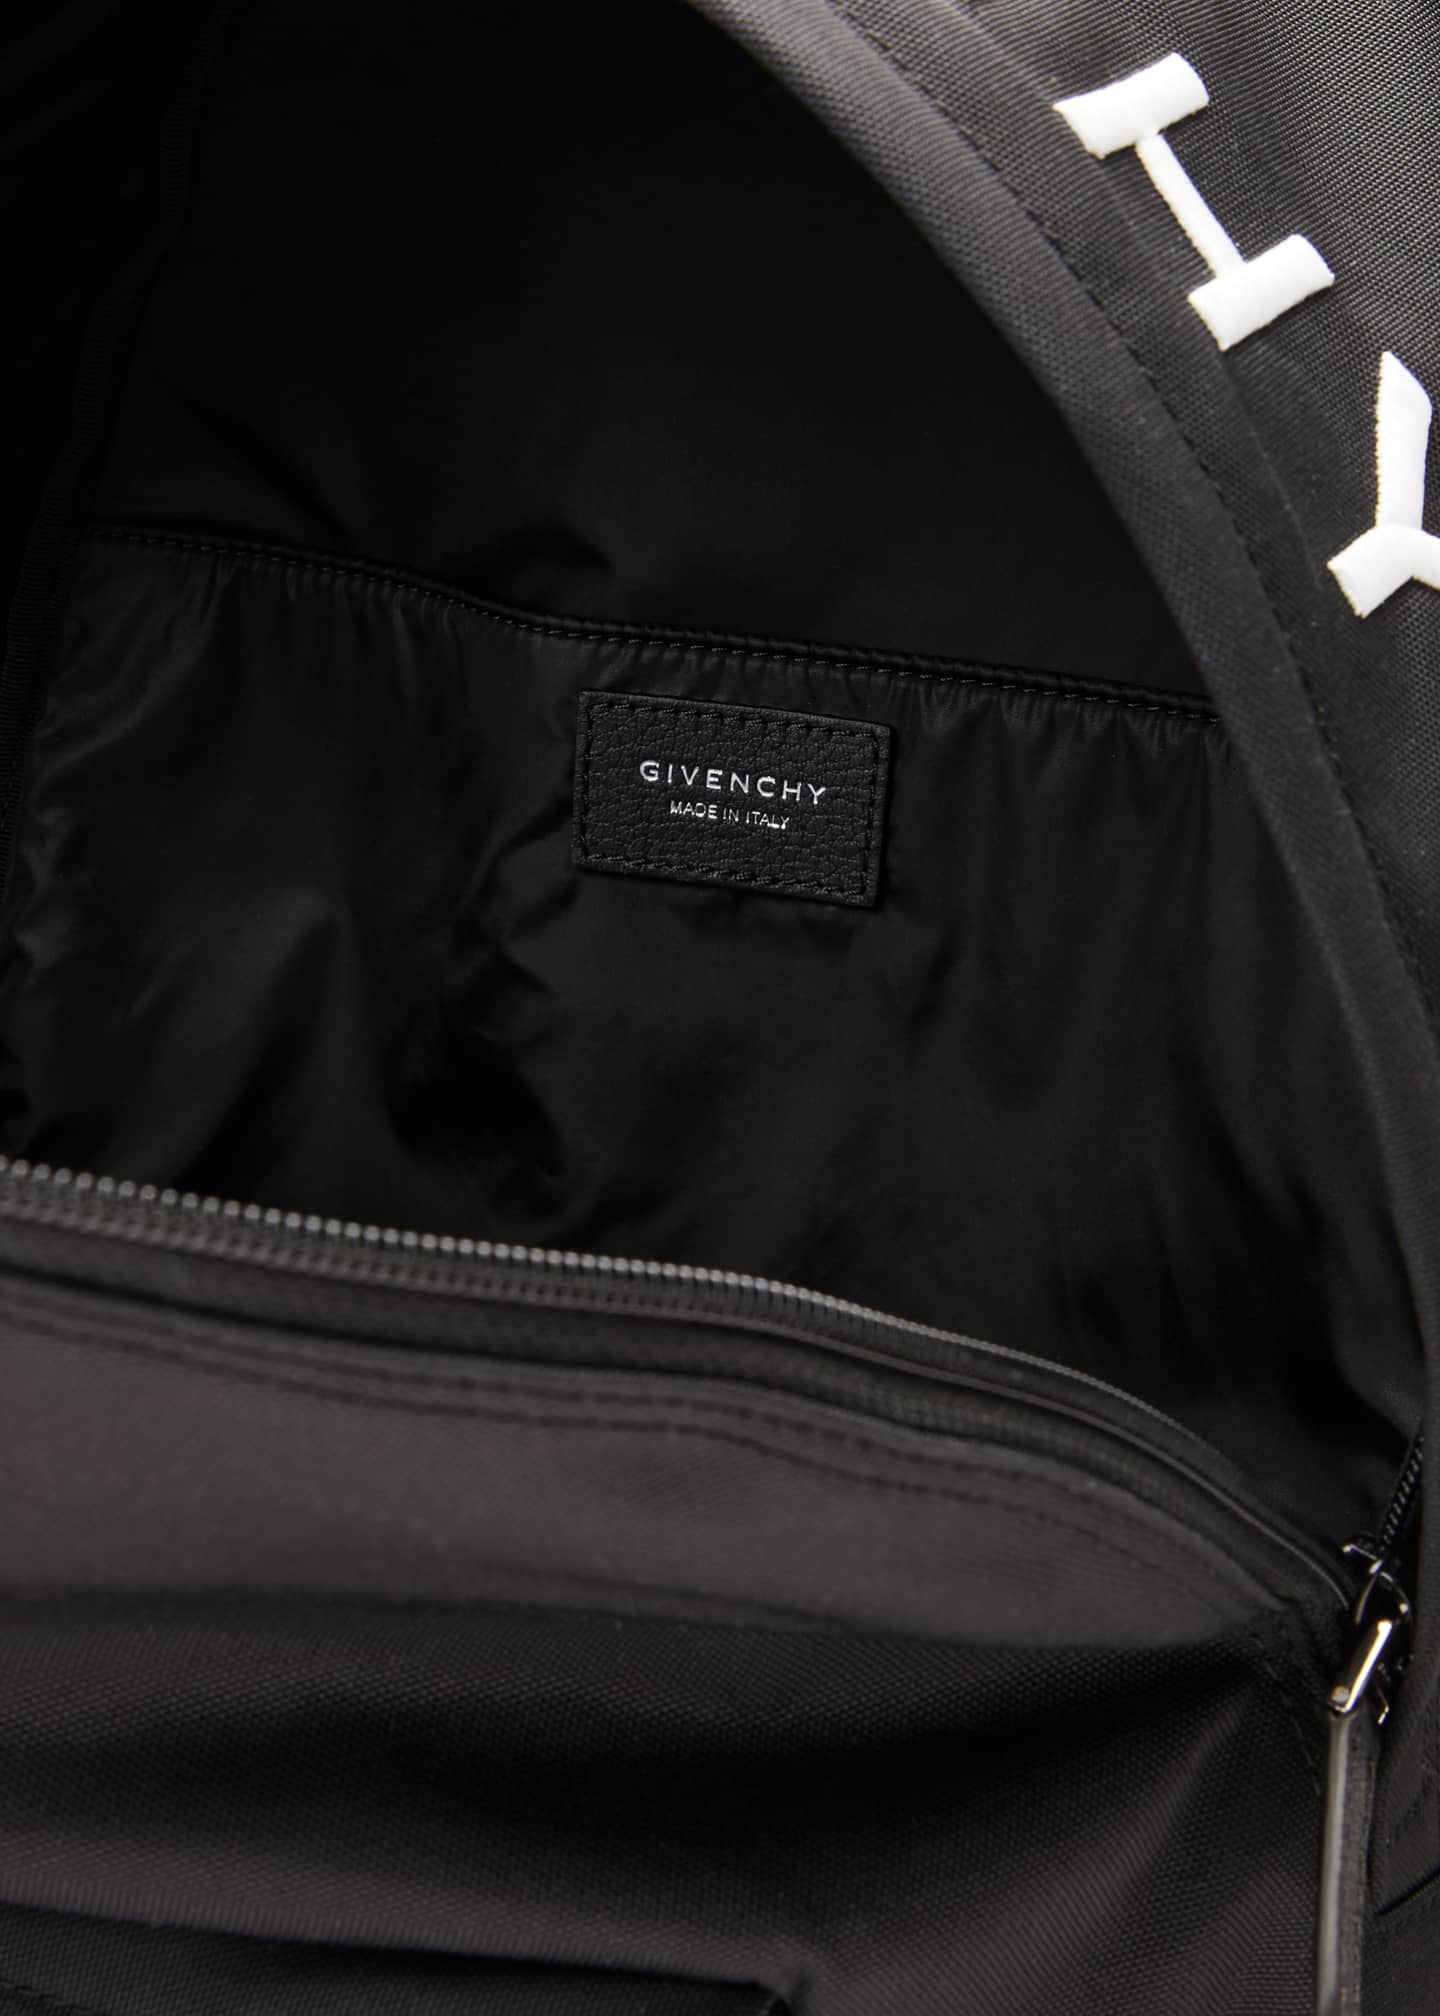 Givenchy Men's Essential U Logo Backpack